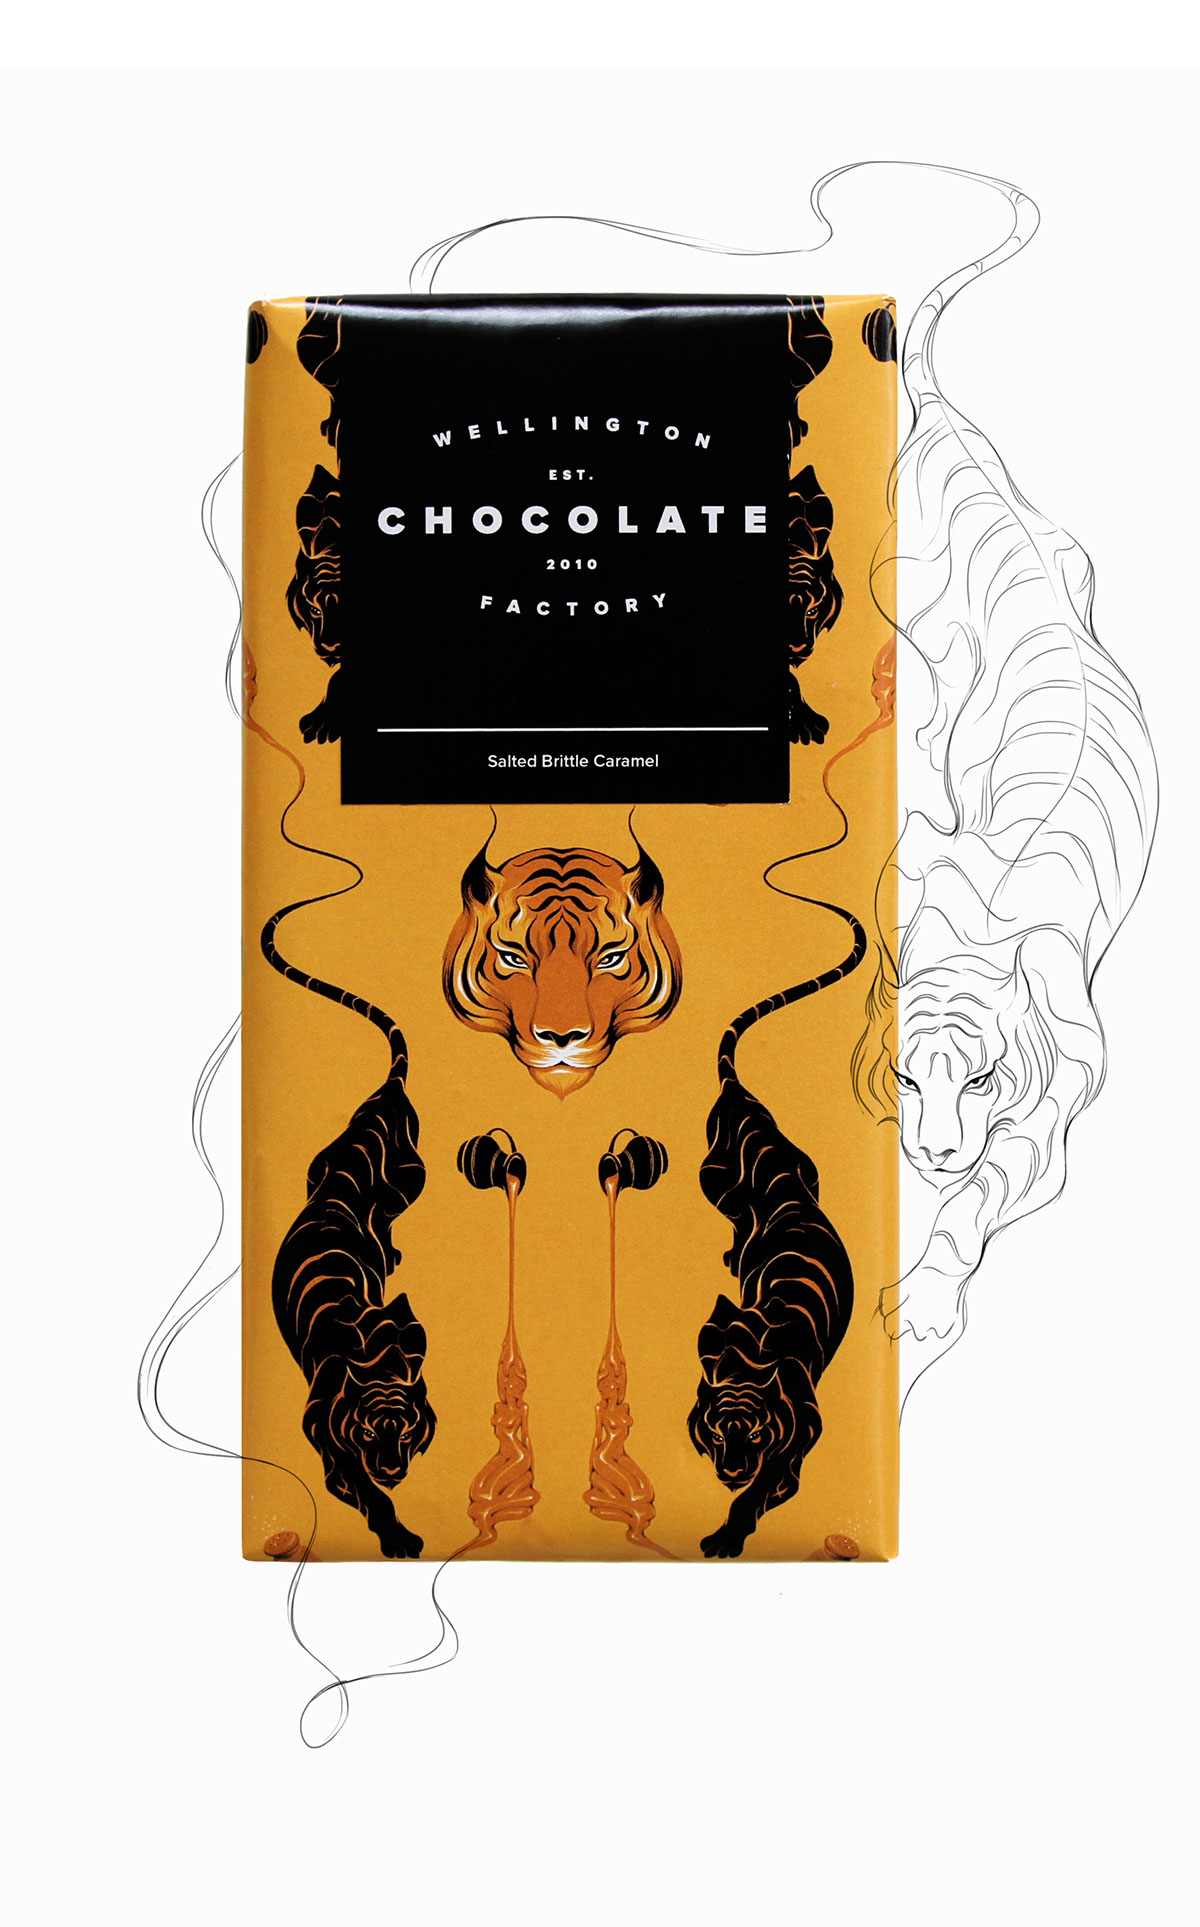 惠灵顿巧克力的巧克力包装设计。(图1)